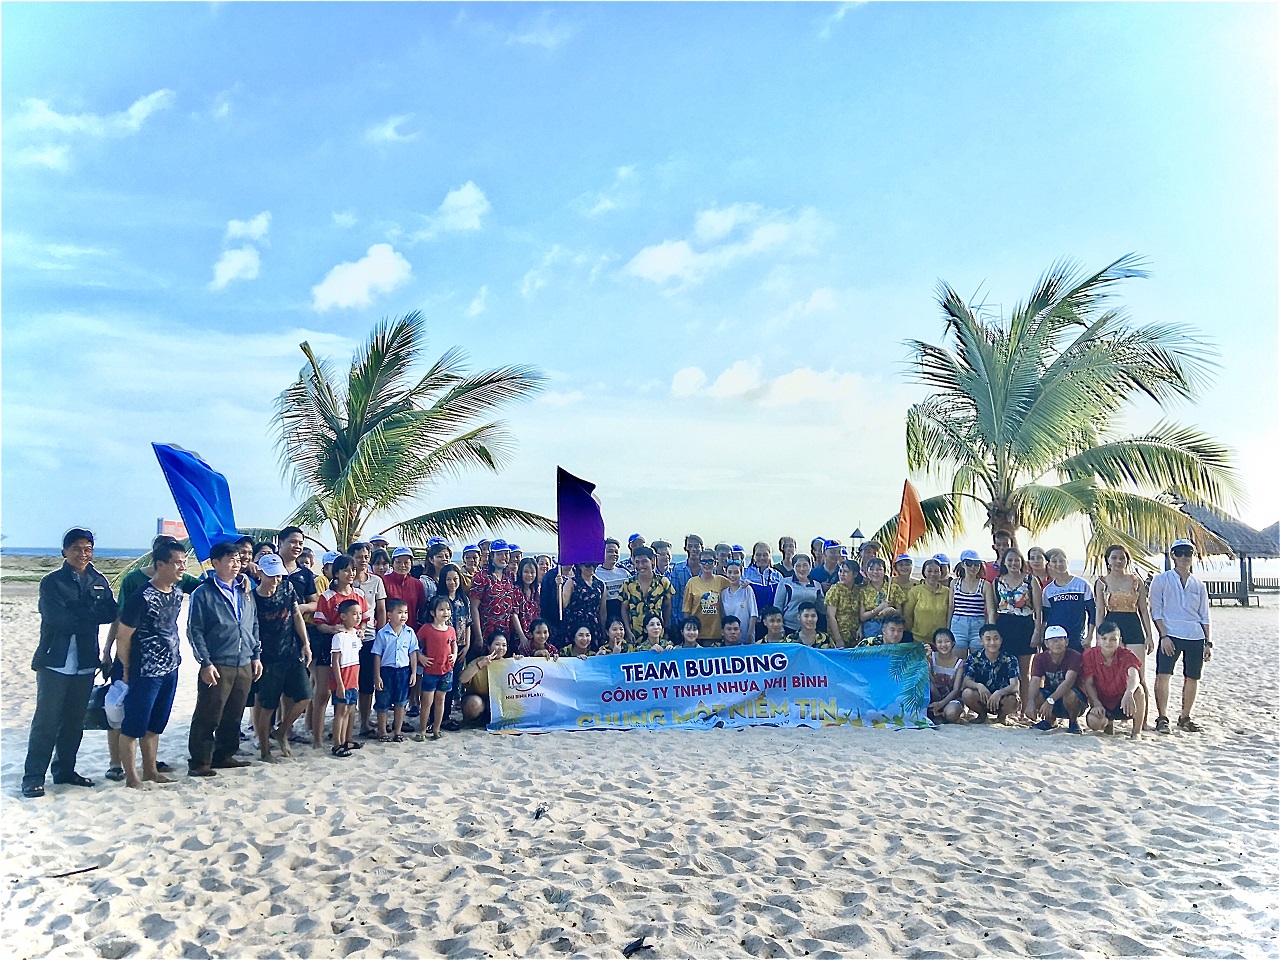 Nhựa Nhị Bình tổ chức thăm quan, nghỉ mát cho CBCNV - Người lao động năm 2019